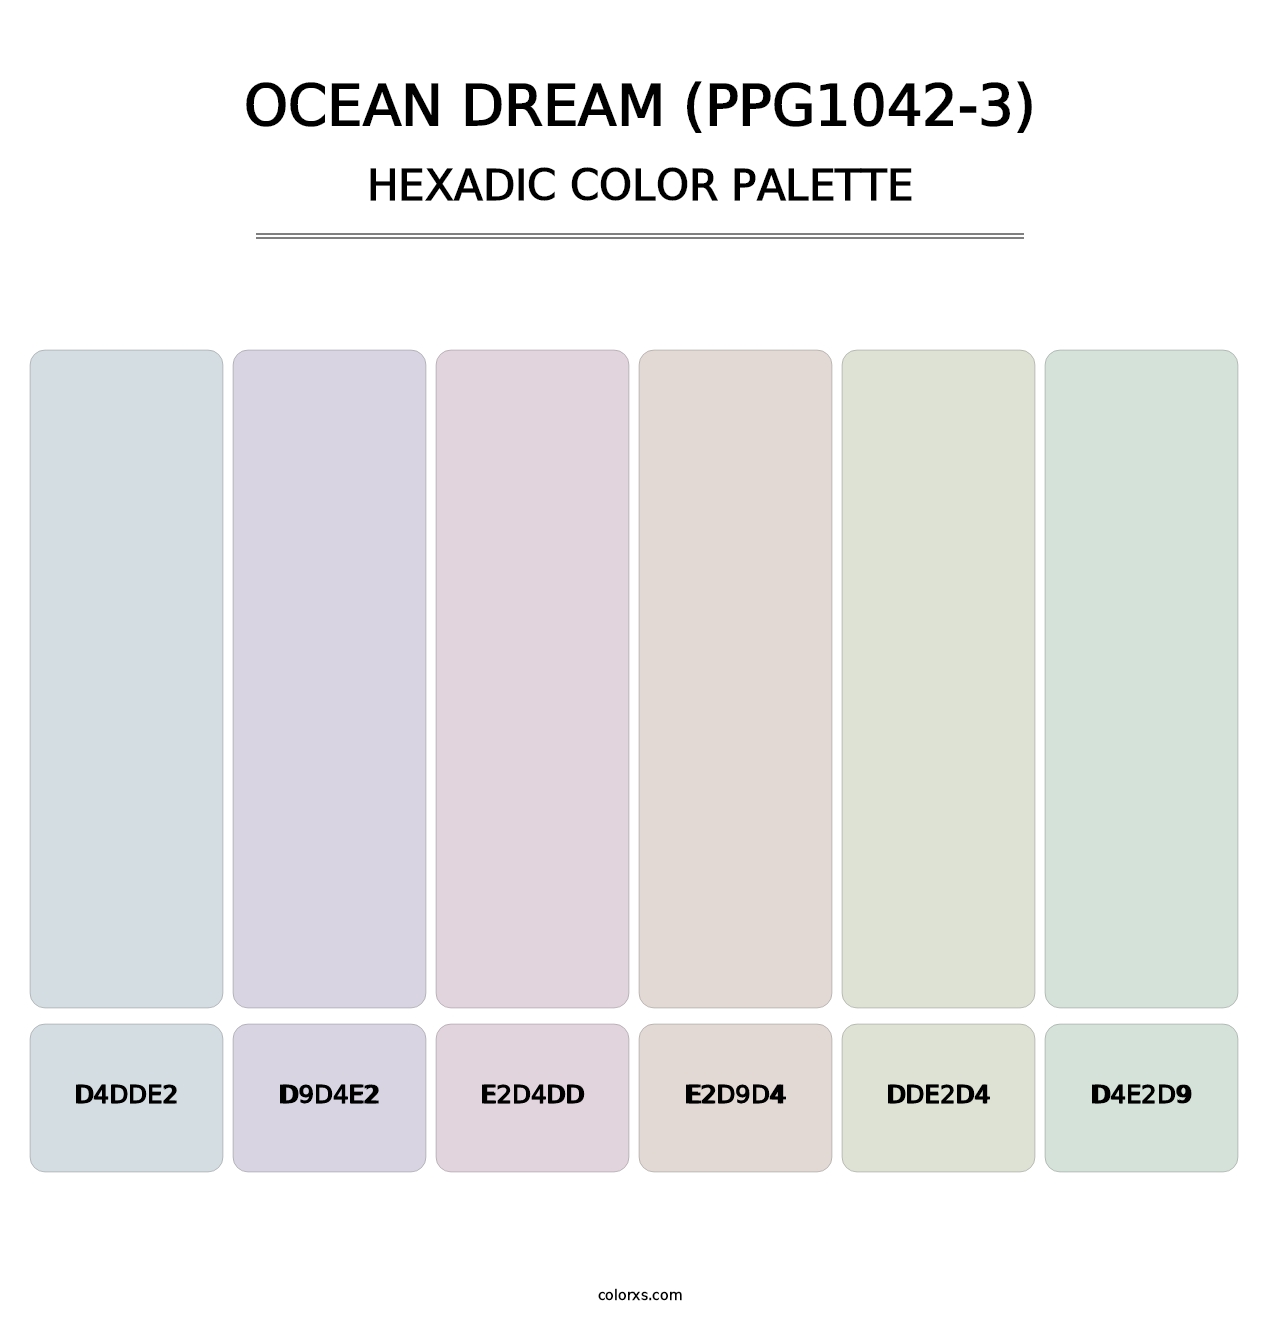 Ocean Dream (PPG1042-3) - Hexadic Color Palette